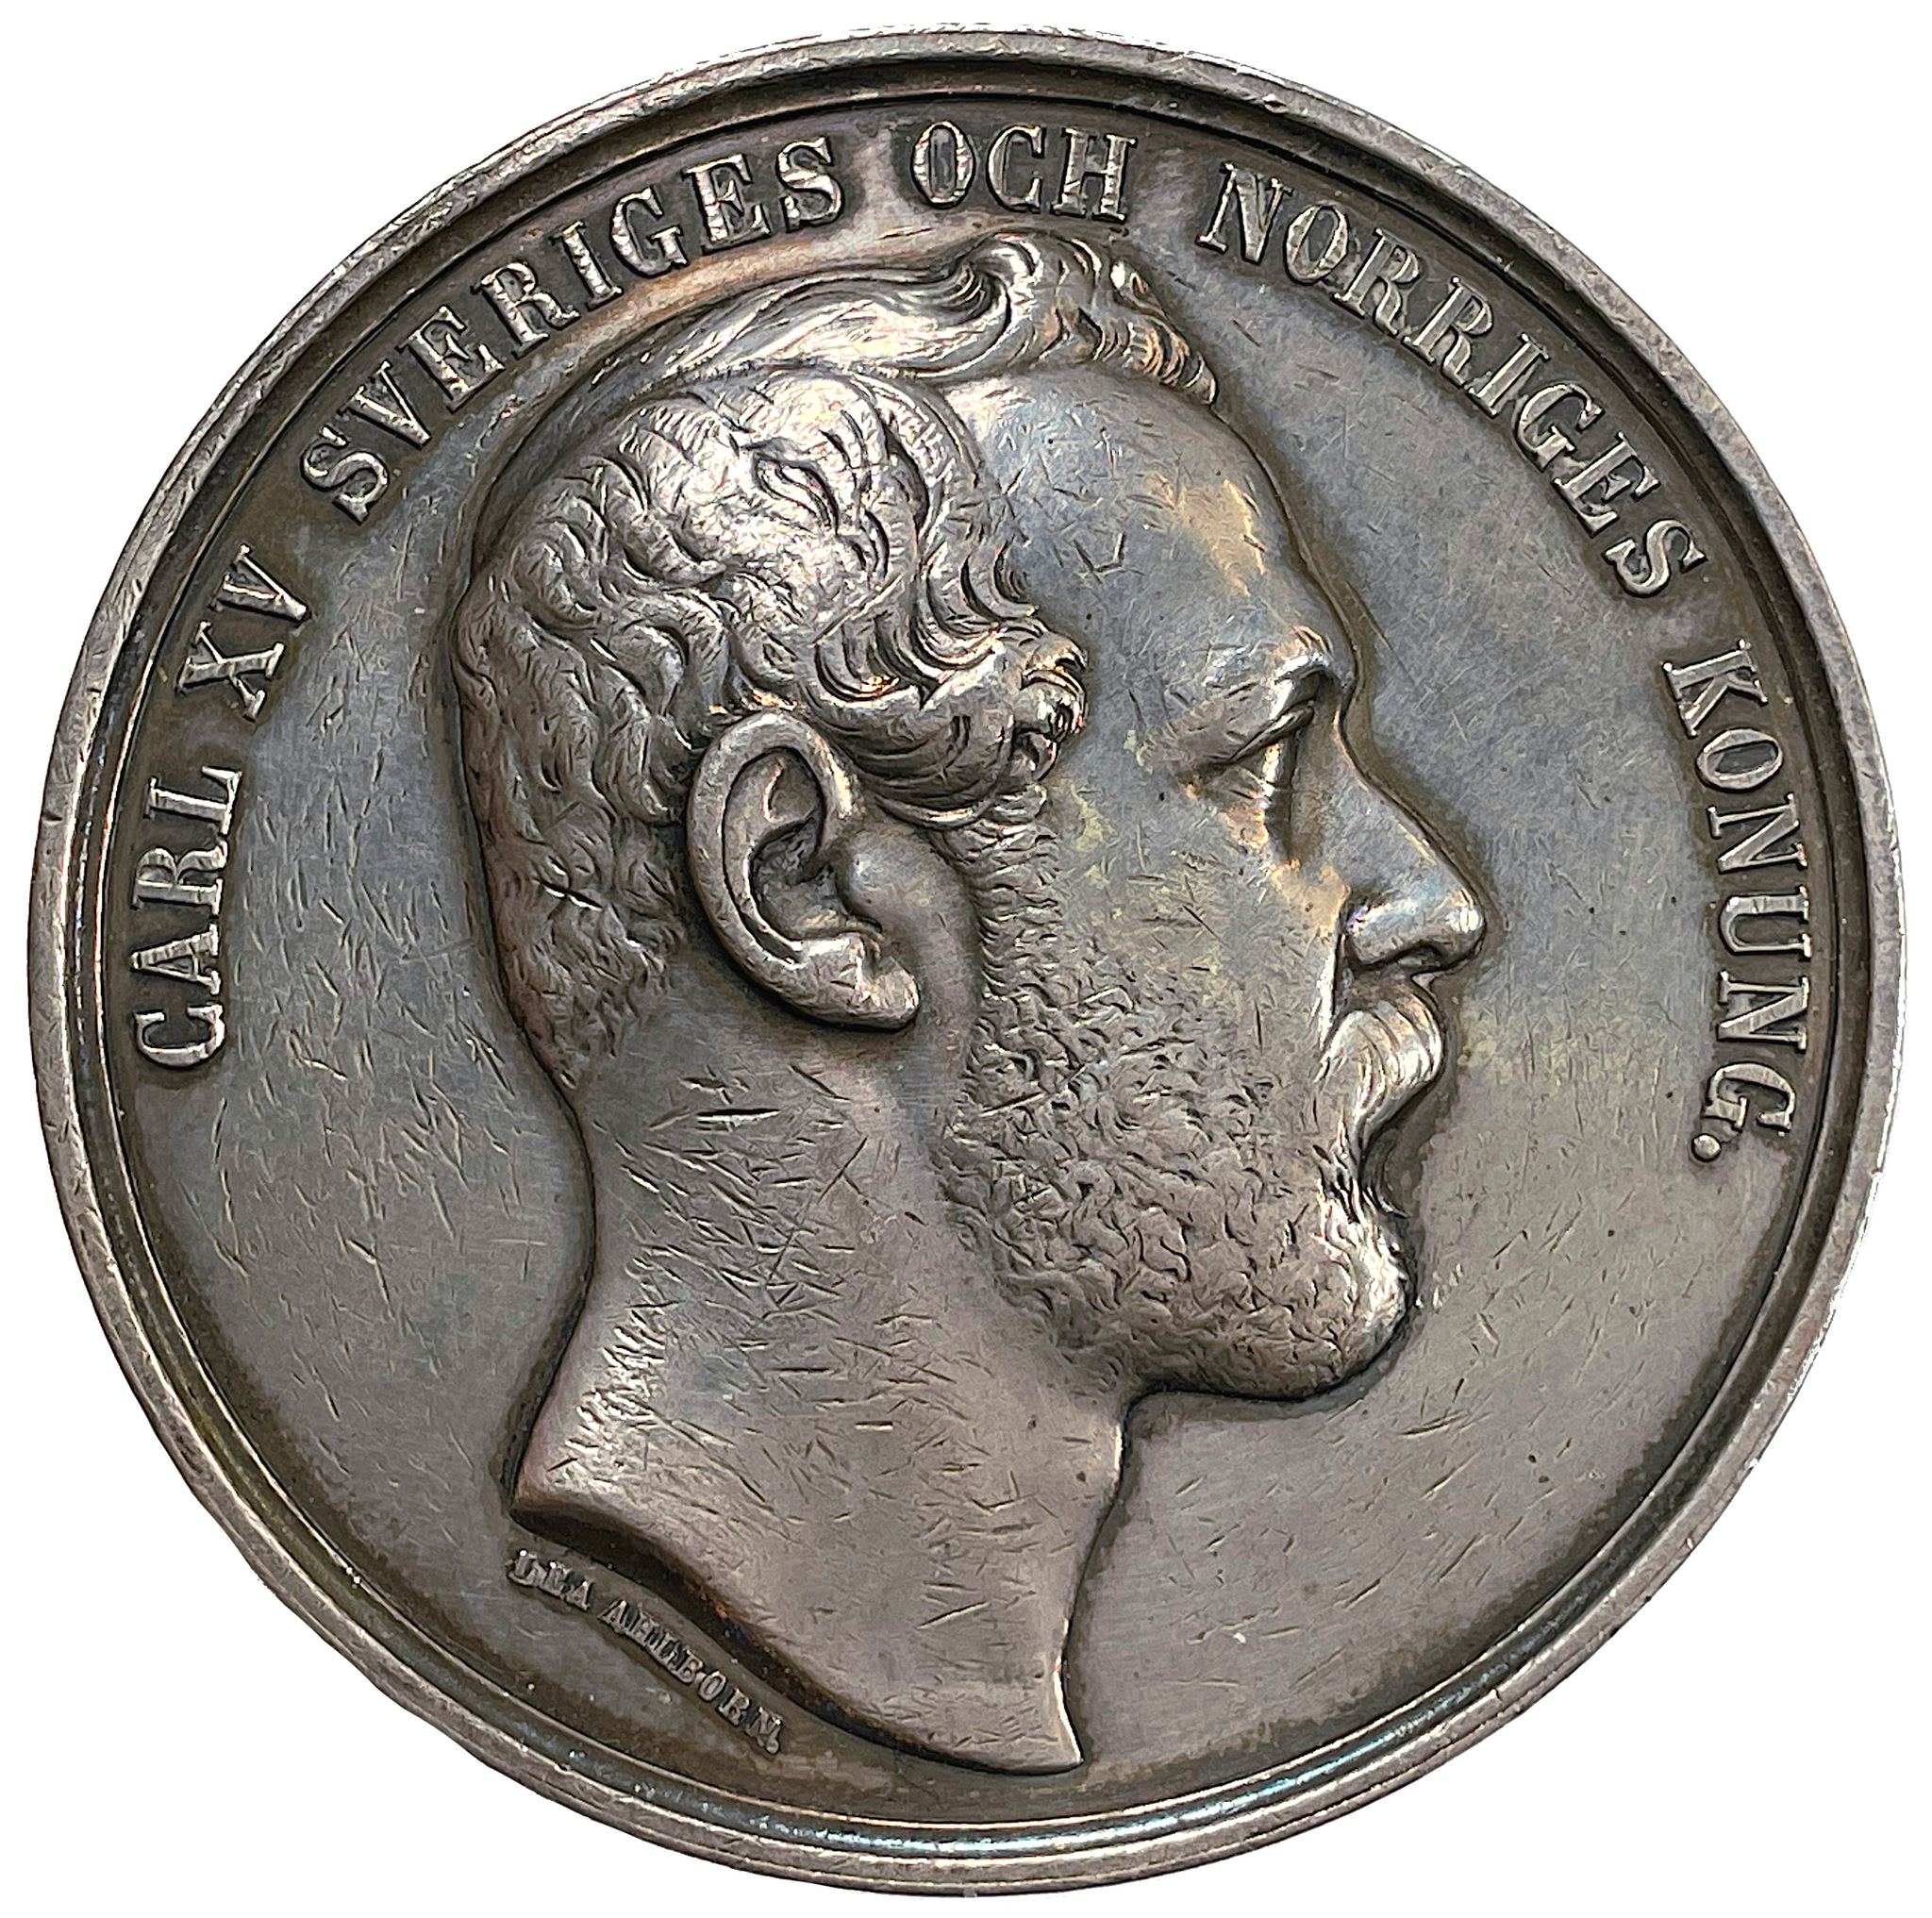 Karl XV - Belöningsmedalj för utställning av gödkreatur och mejerialster (1866) av Lea Ahlborn